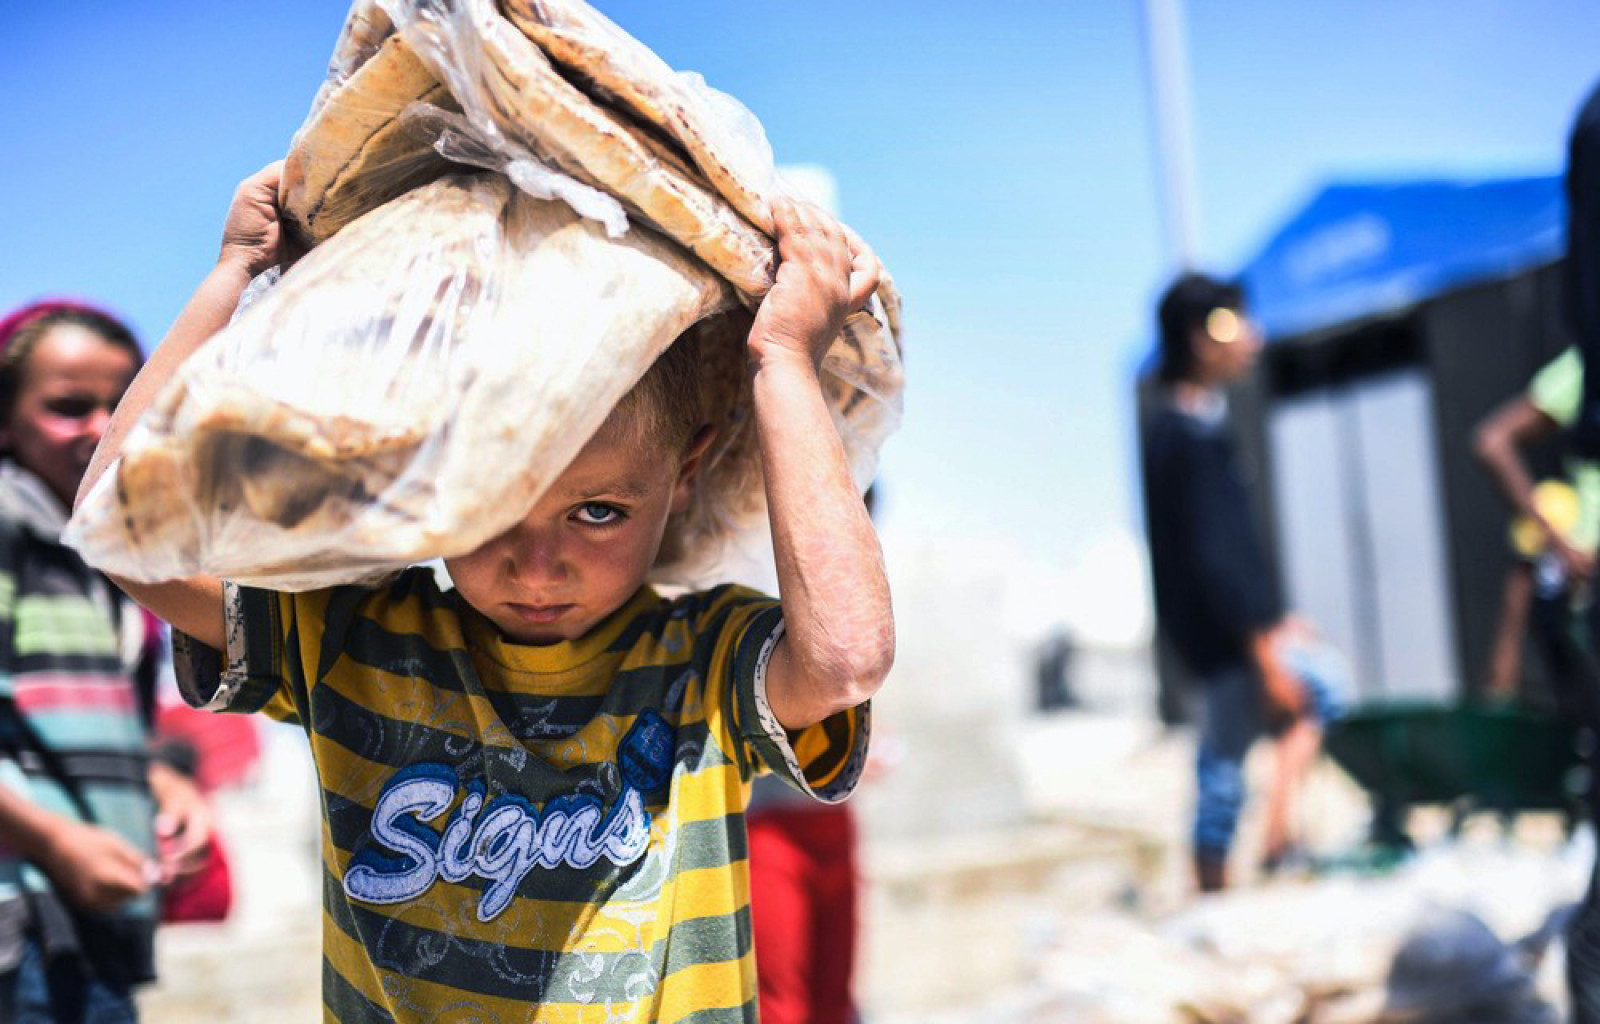 Cирійська дитина несе хліб у тимчасовому таборі в селі Айн-Ісса 11 липня 2017 року. (Photo by Bulent Kilic / AFP Photo)